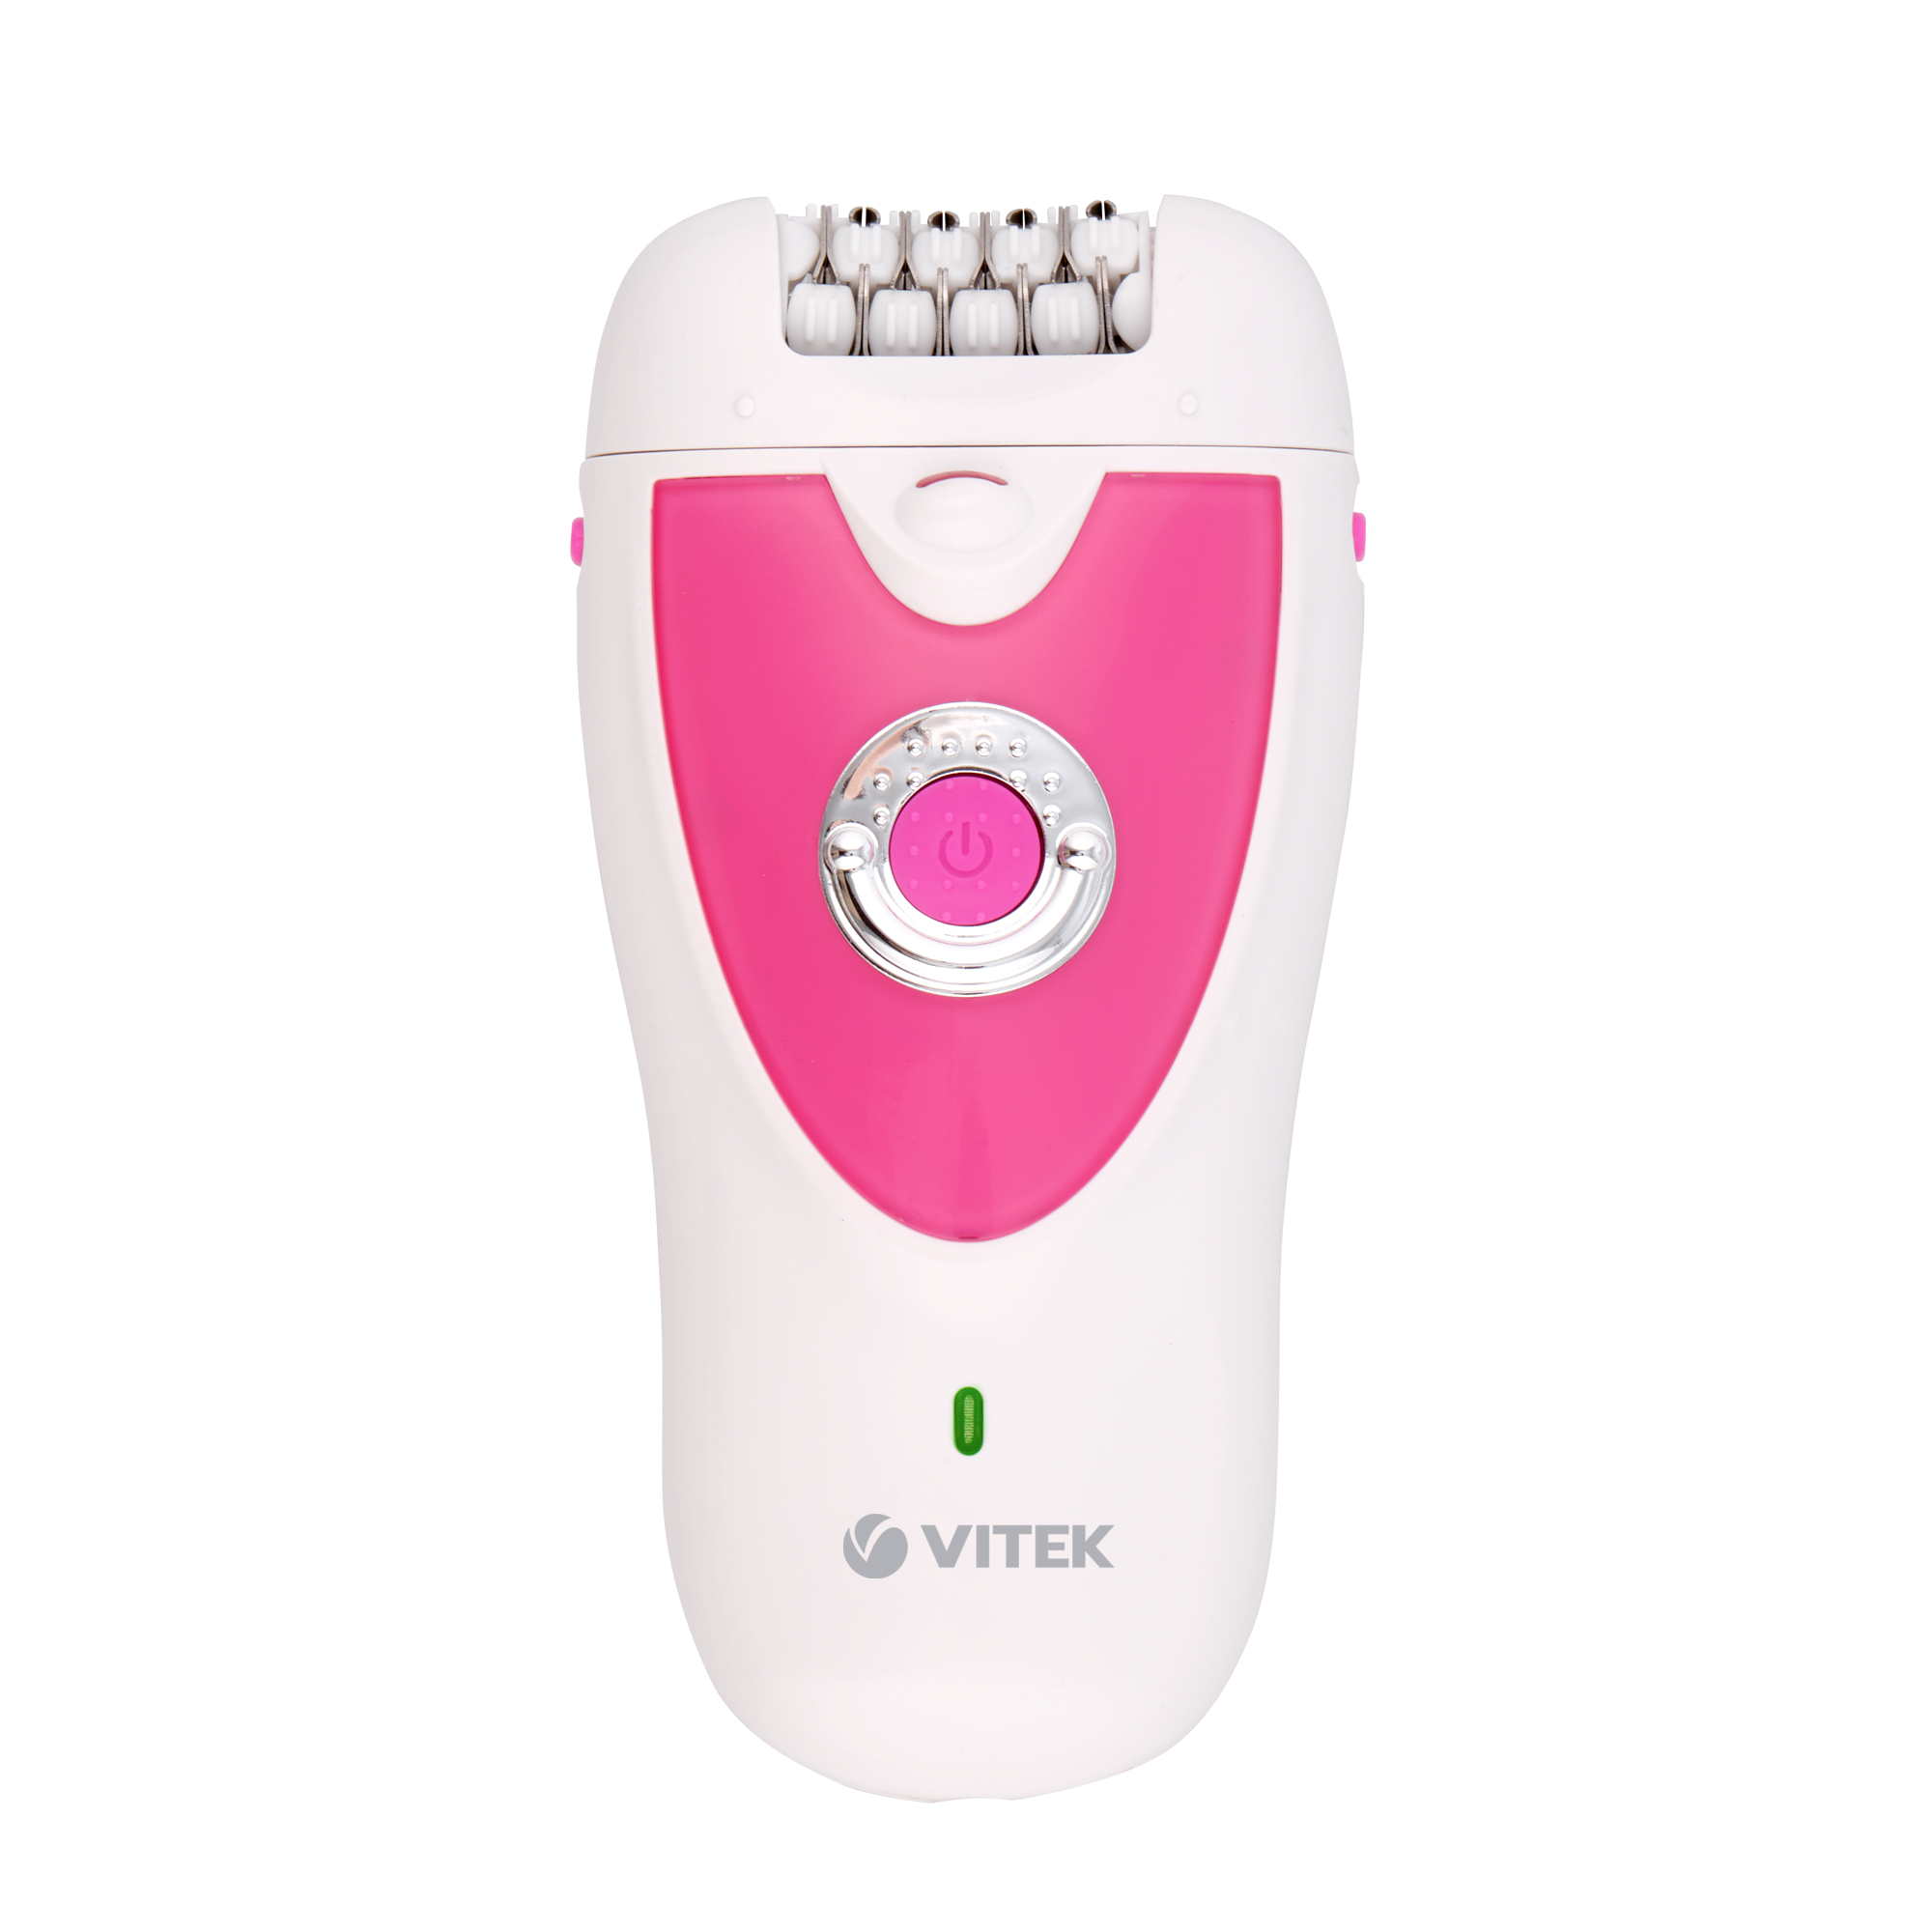 Эпилятор VITEK VT-2244 белый, розовый эпилятор braun s3 se 3 277 silk epil розовый